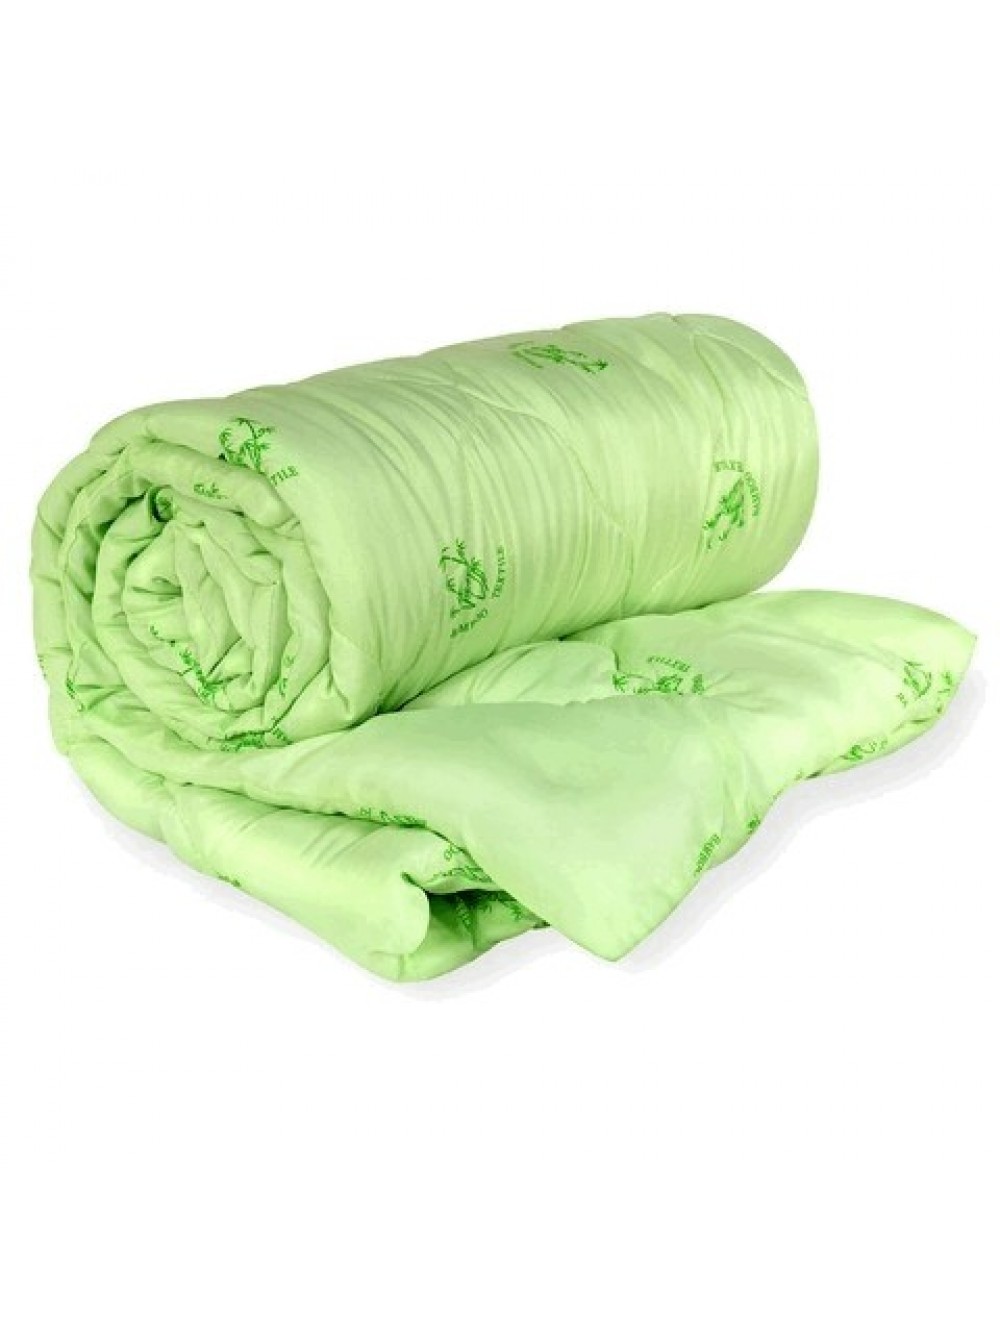 одеяло бамбук Ивтекс (евро)